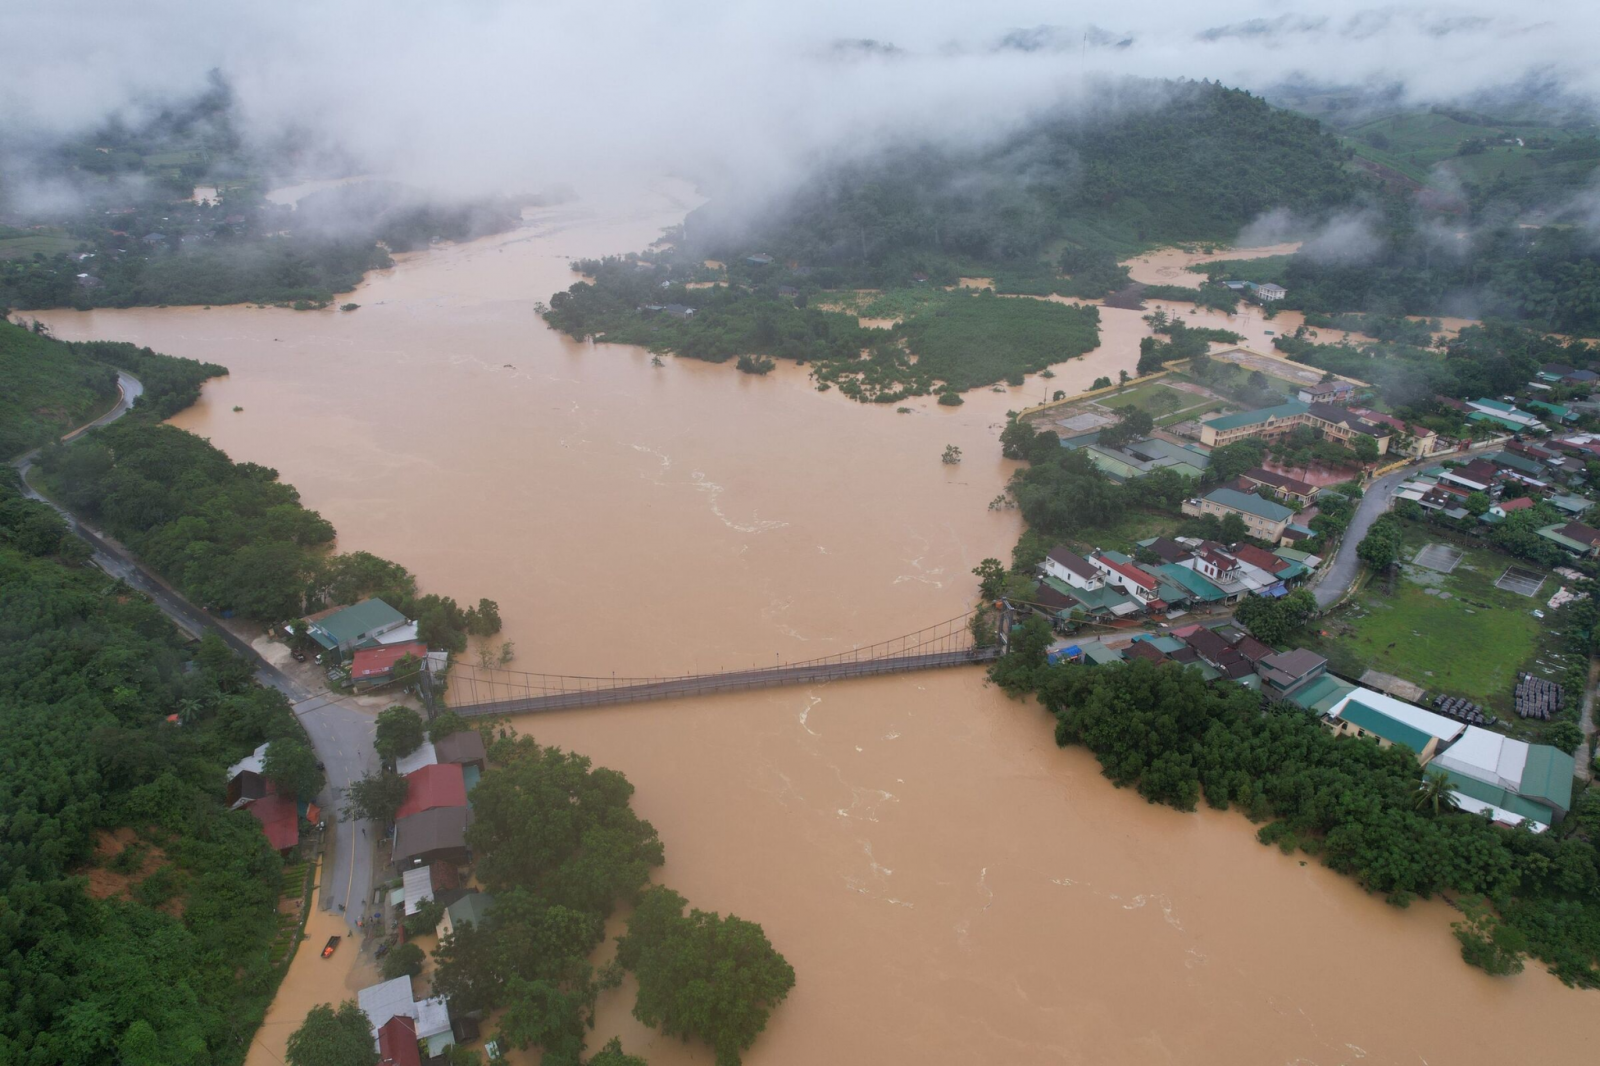  Mưa lớn khiến nước từ các sông suối dâng cao, tràn vào một số khu dân cư thị trấn Tân Lạc, huyện Quỳ Châu và thị trấn Dùng, huyện Thanh Chương (Nghệ An)